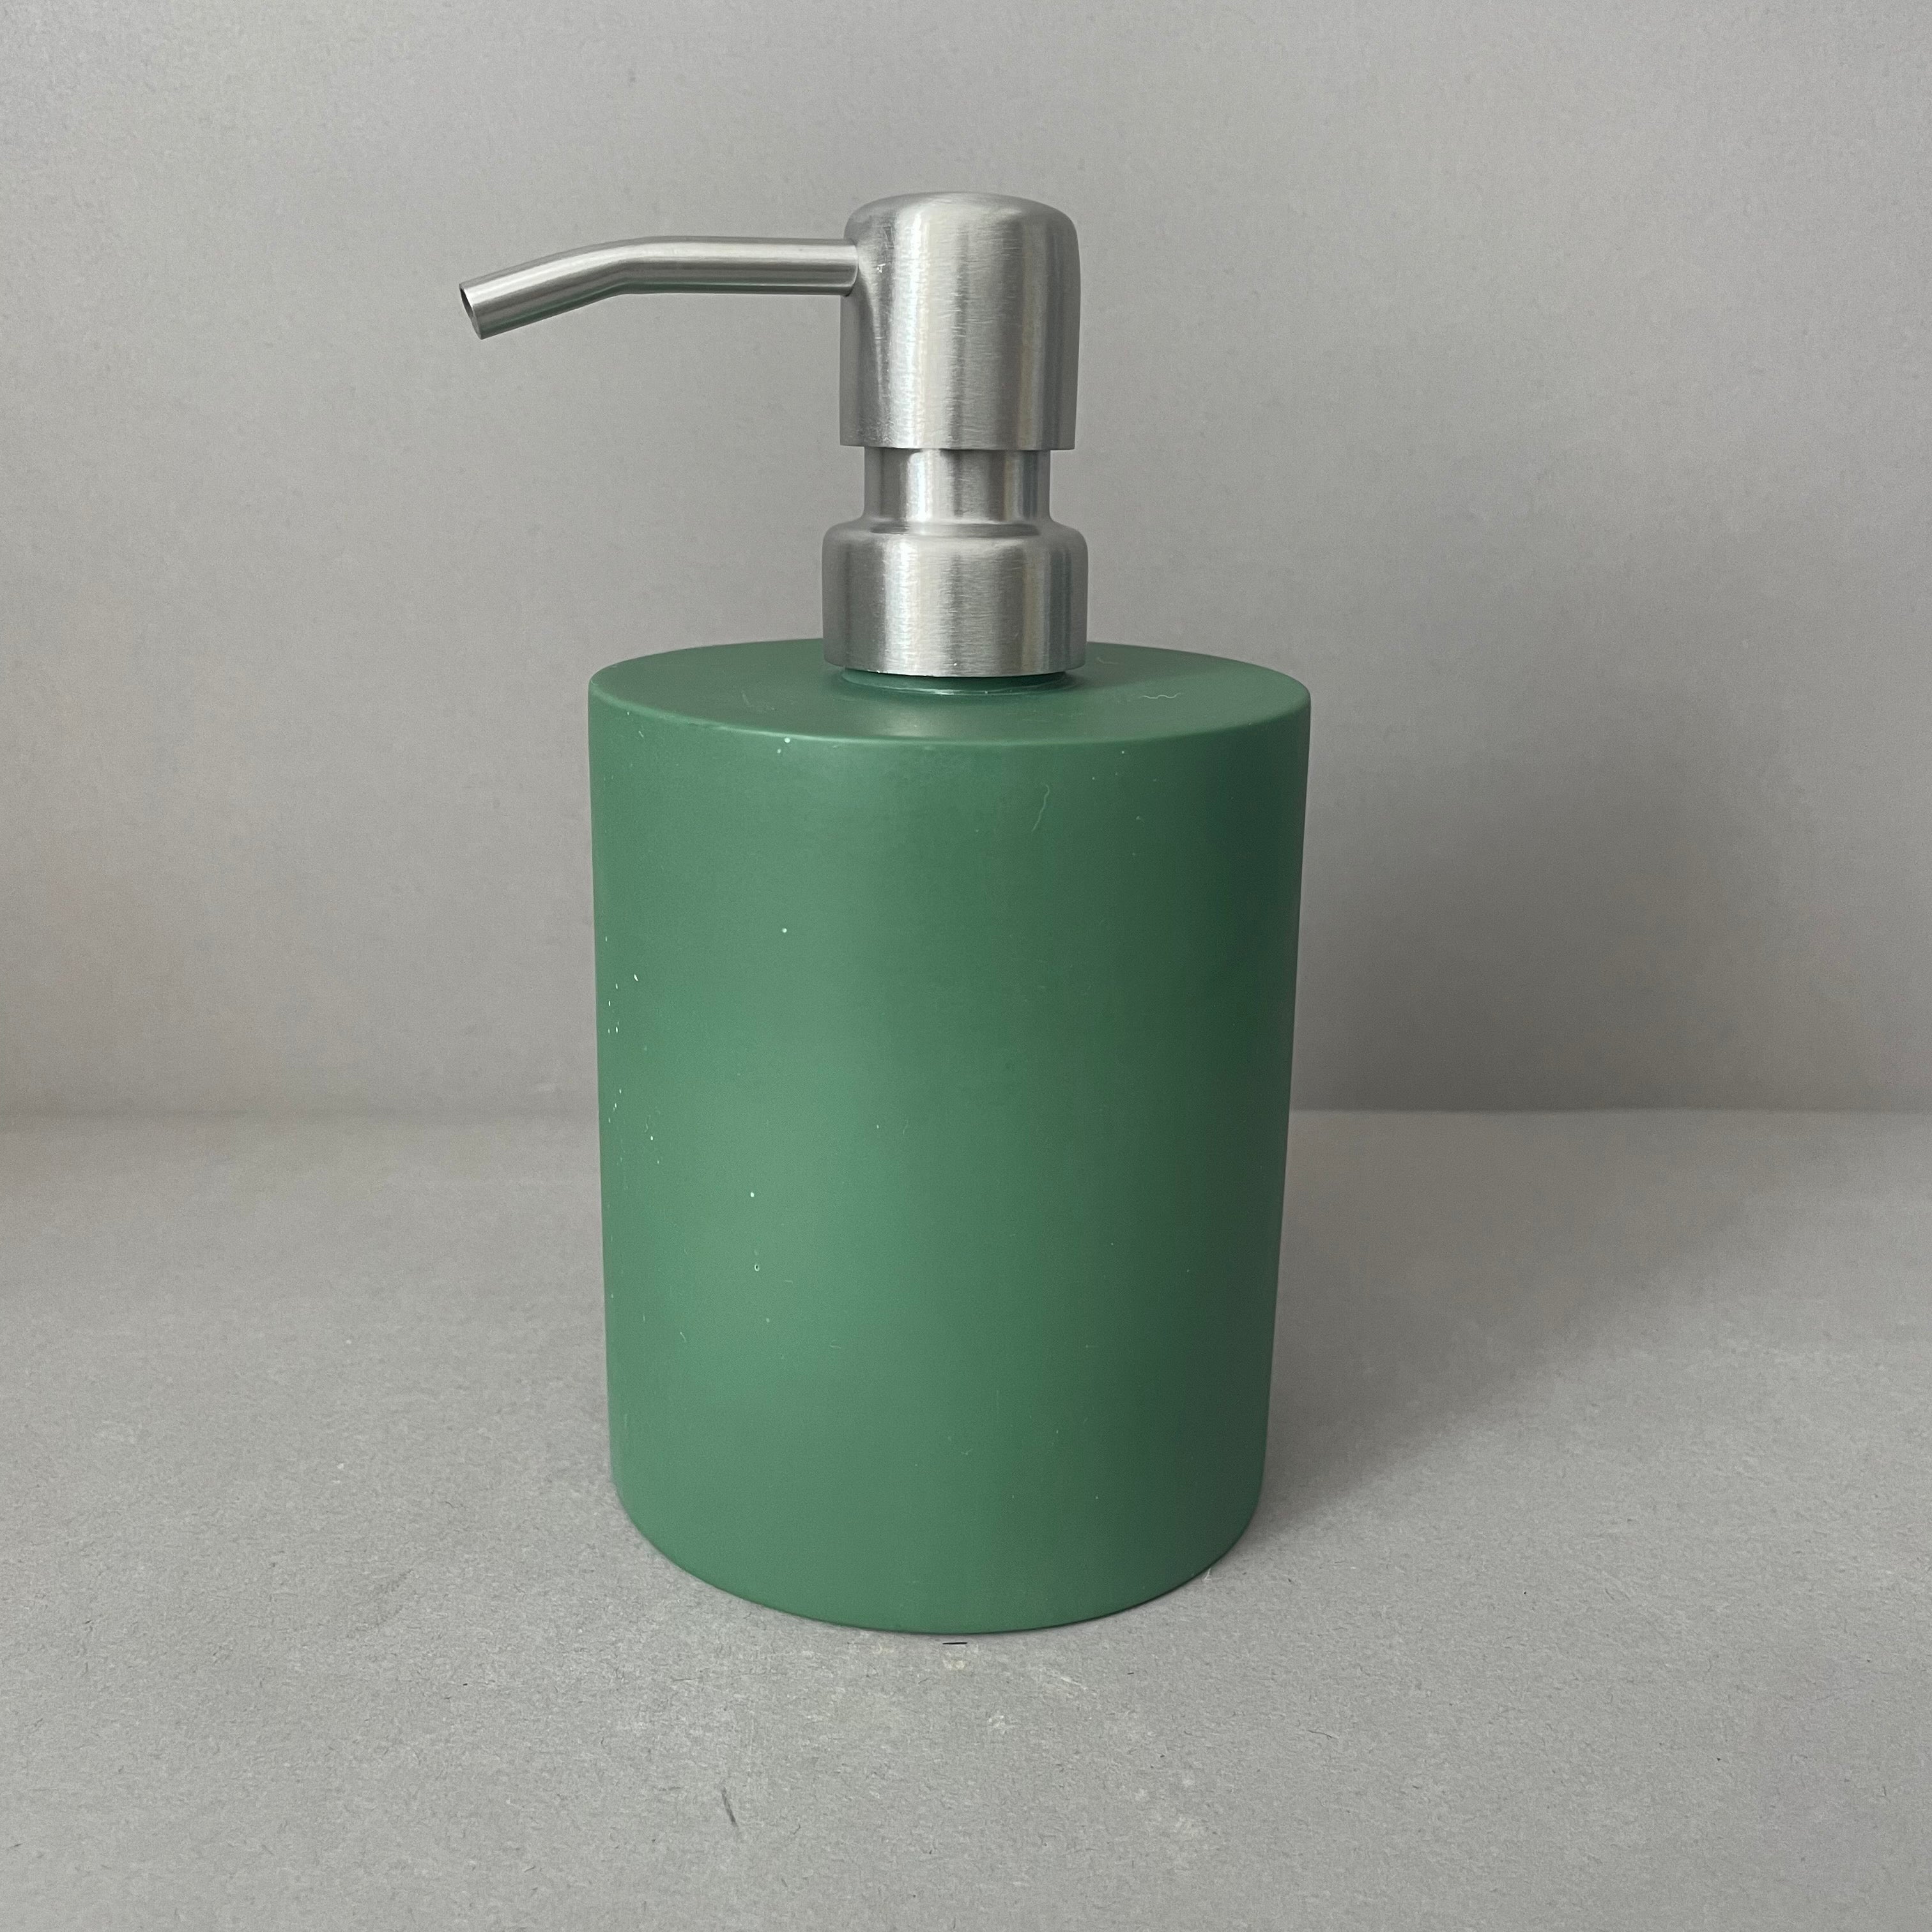 Green Resin Soap Dispenser